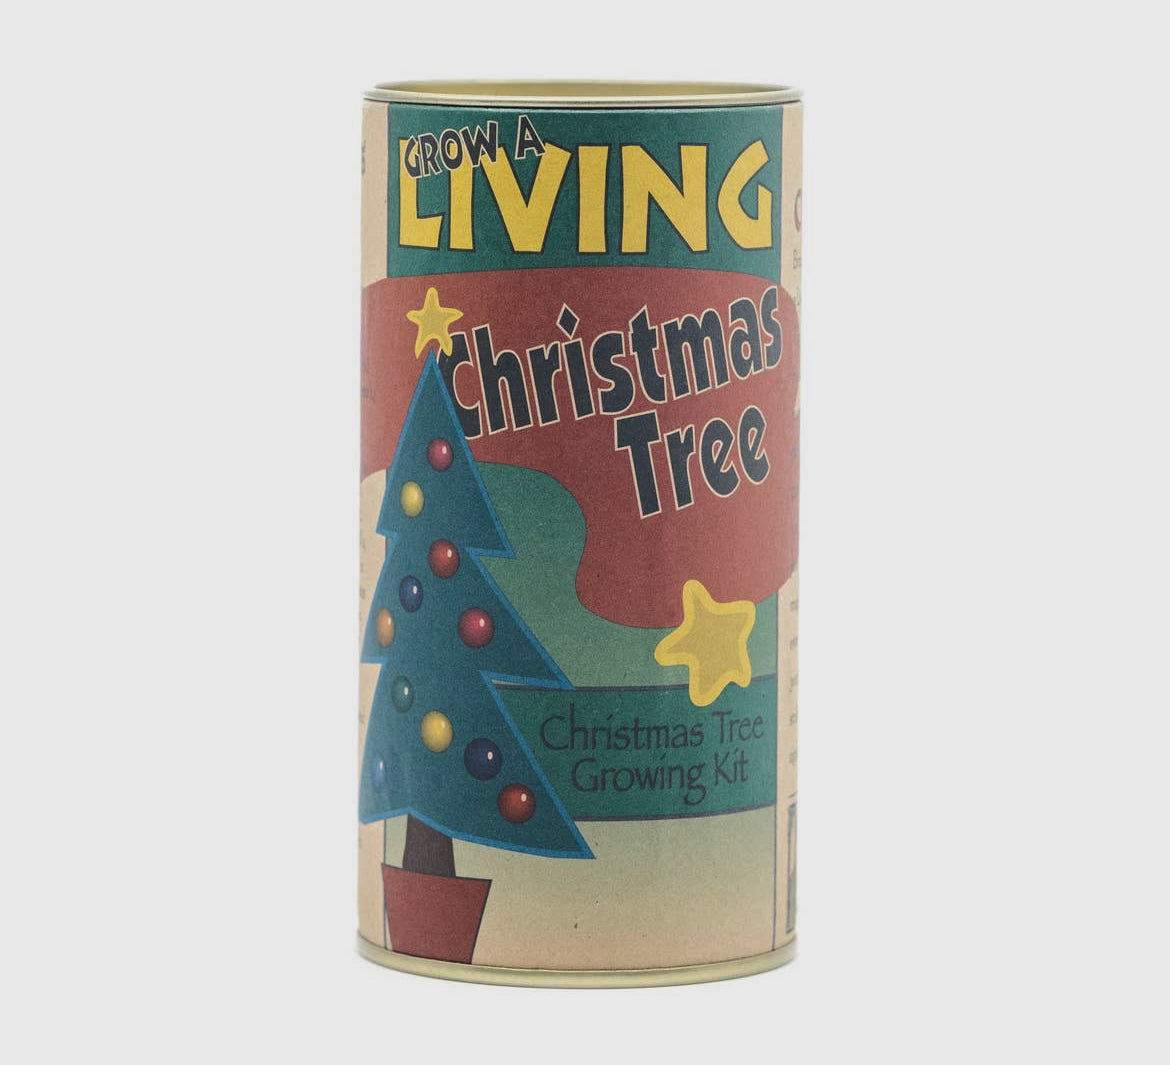 Living Christmas Tree - Seed Grow Kit